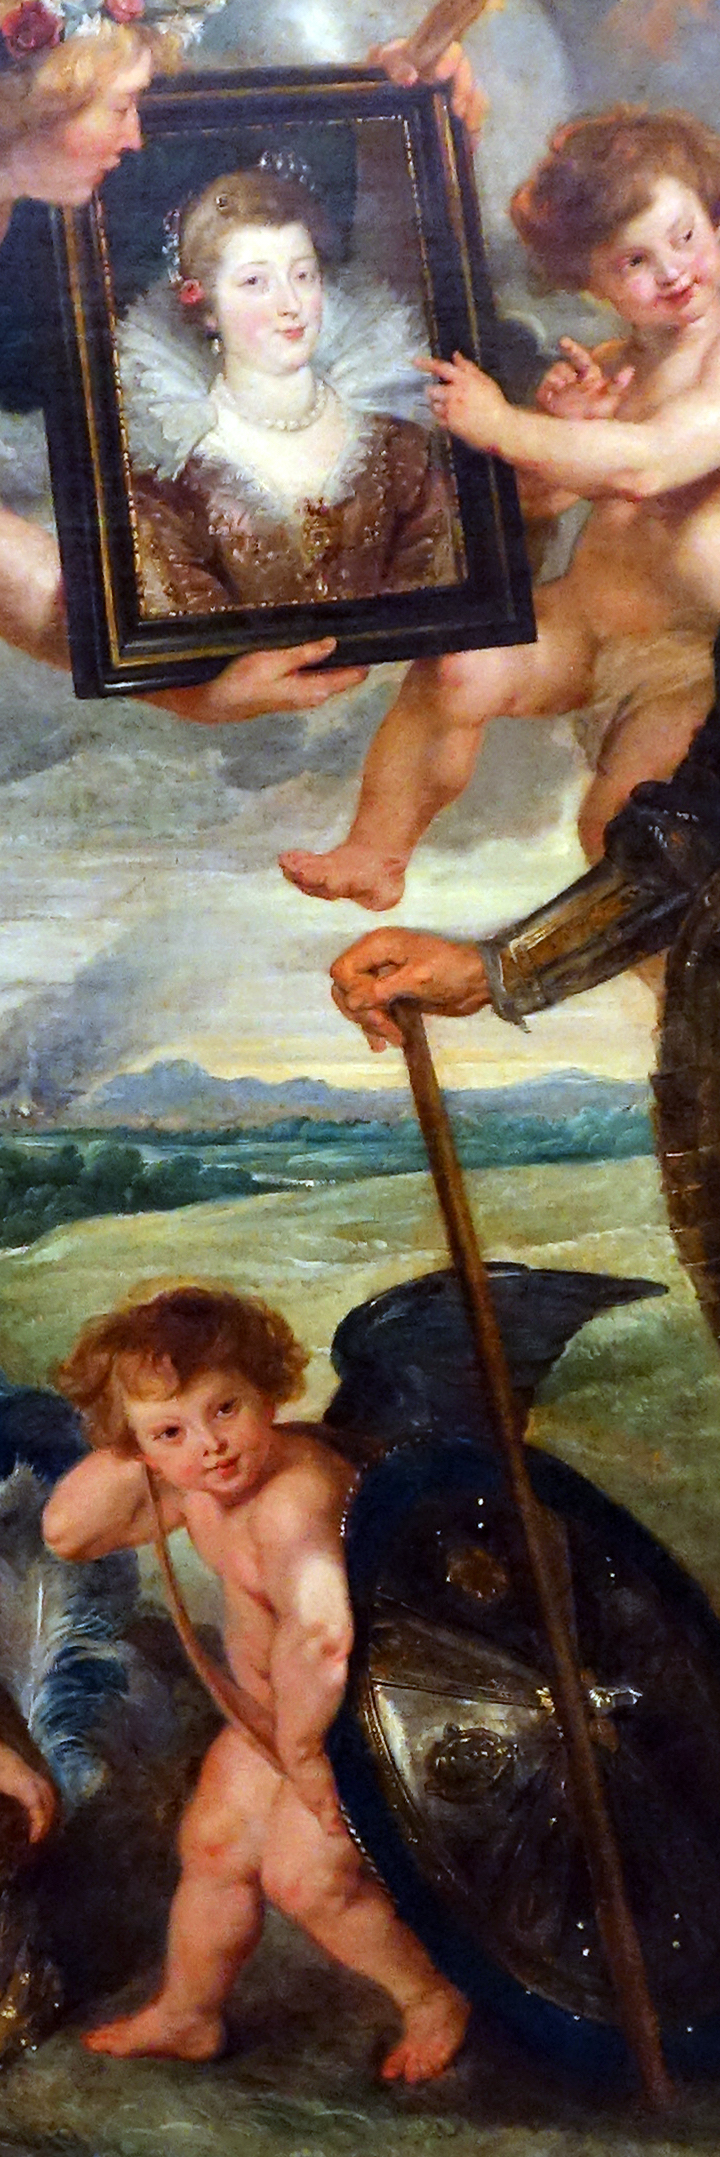 Marie de’ Medici and cherub (detail), Peter Paul Rubens, The Presentation of the Portrait of Marie de’ Medici, c. 1622–25, oil on canvas, 394 x 295 cm (Musée du Louvre, Paris; photo: Steven Zucker, CC BY-NC-SA 2.0)